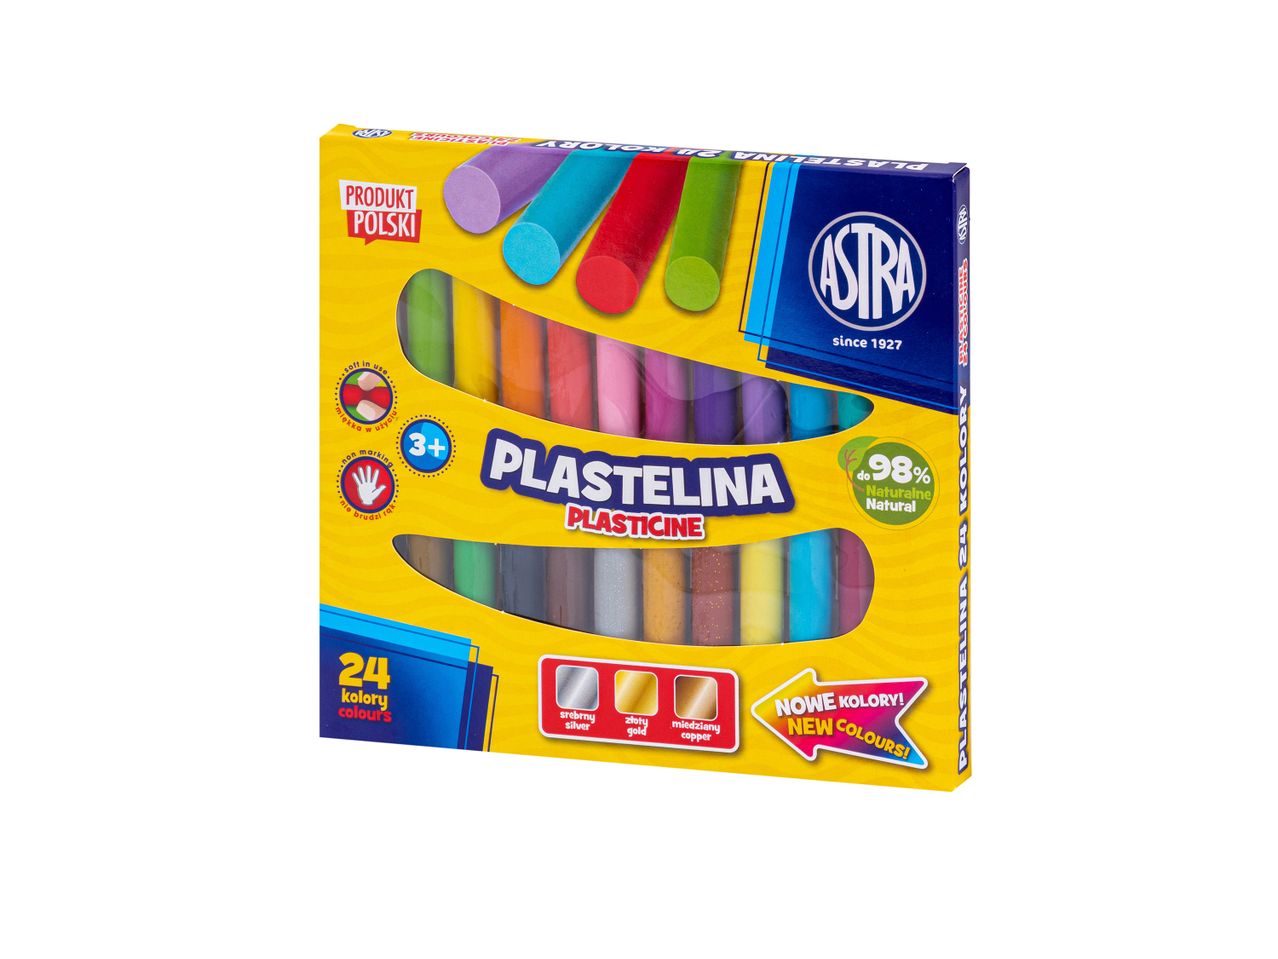 Plastelina Astra, 24 szt. , cena 9,99 PLN 
Plastelina Astra, 24 szt. 
- 24 kolory
- ...